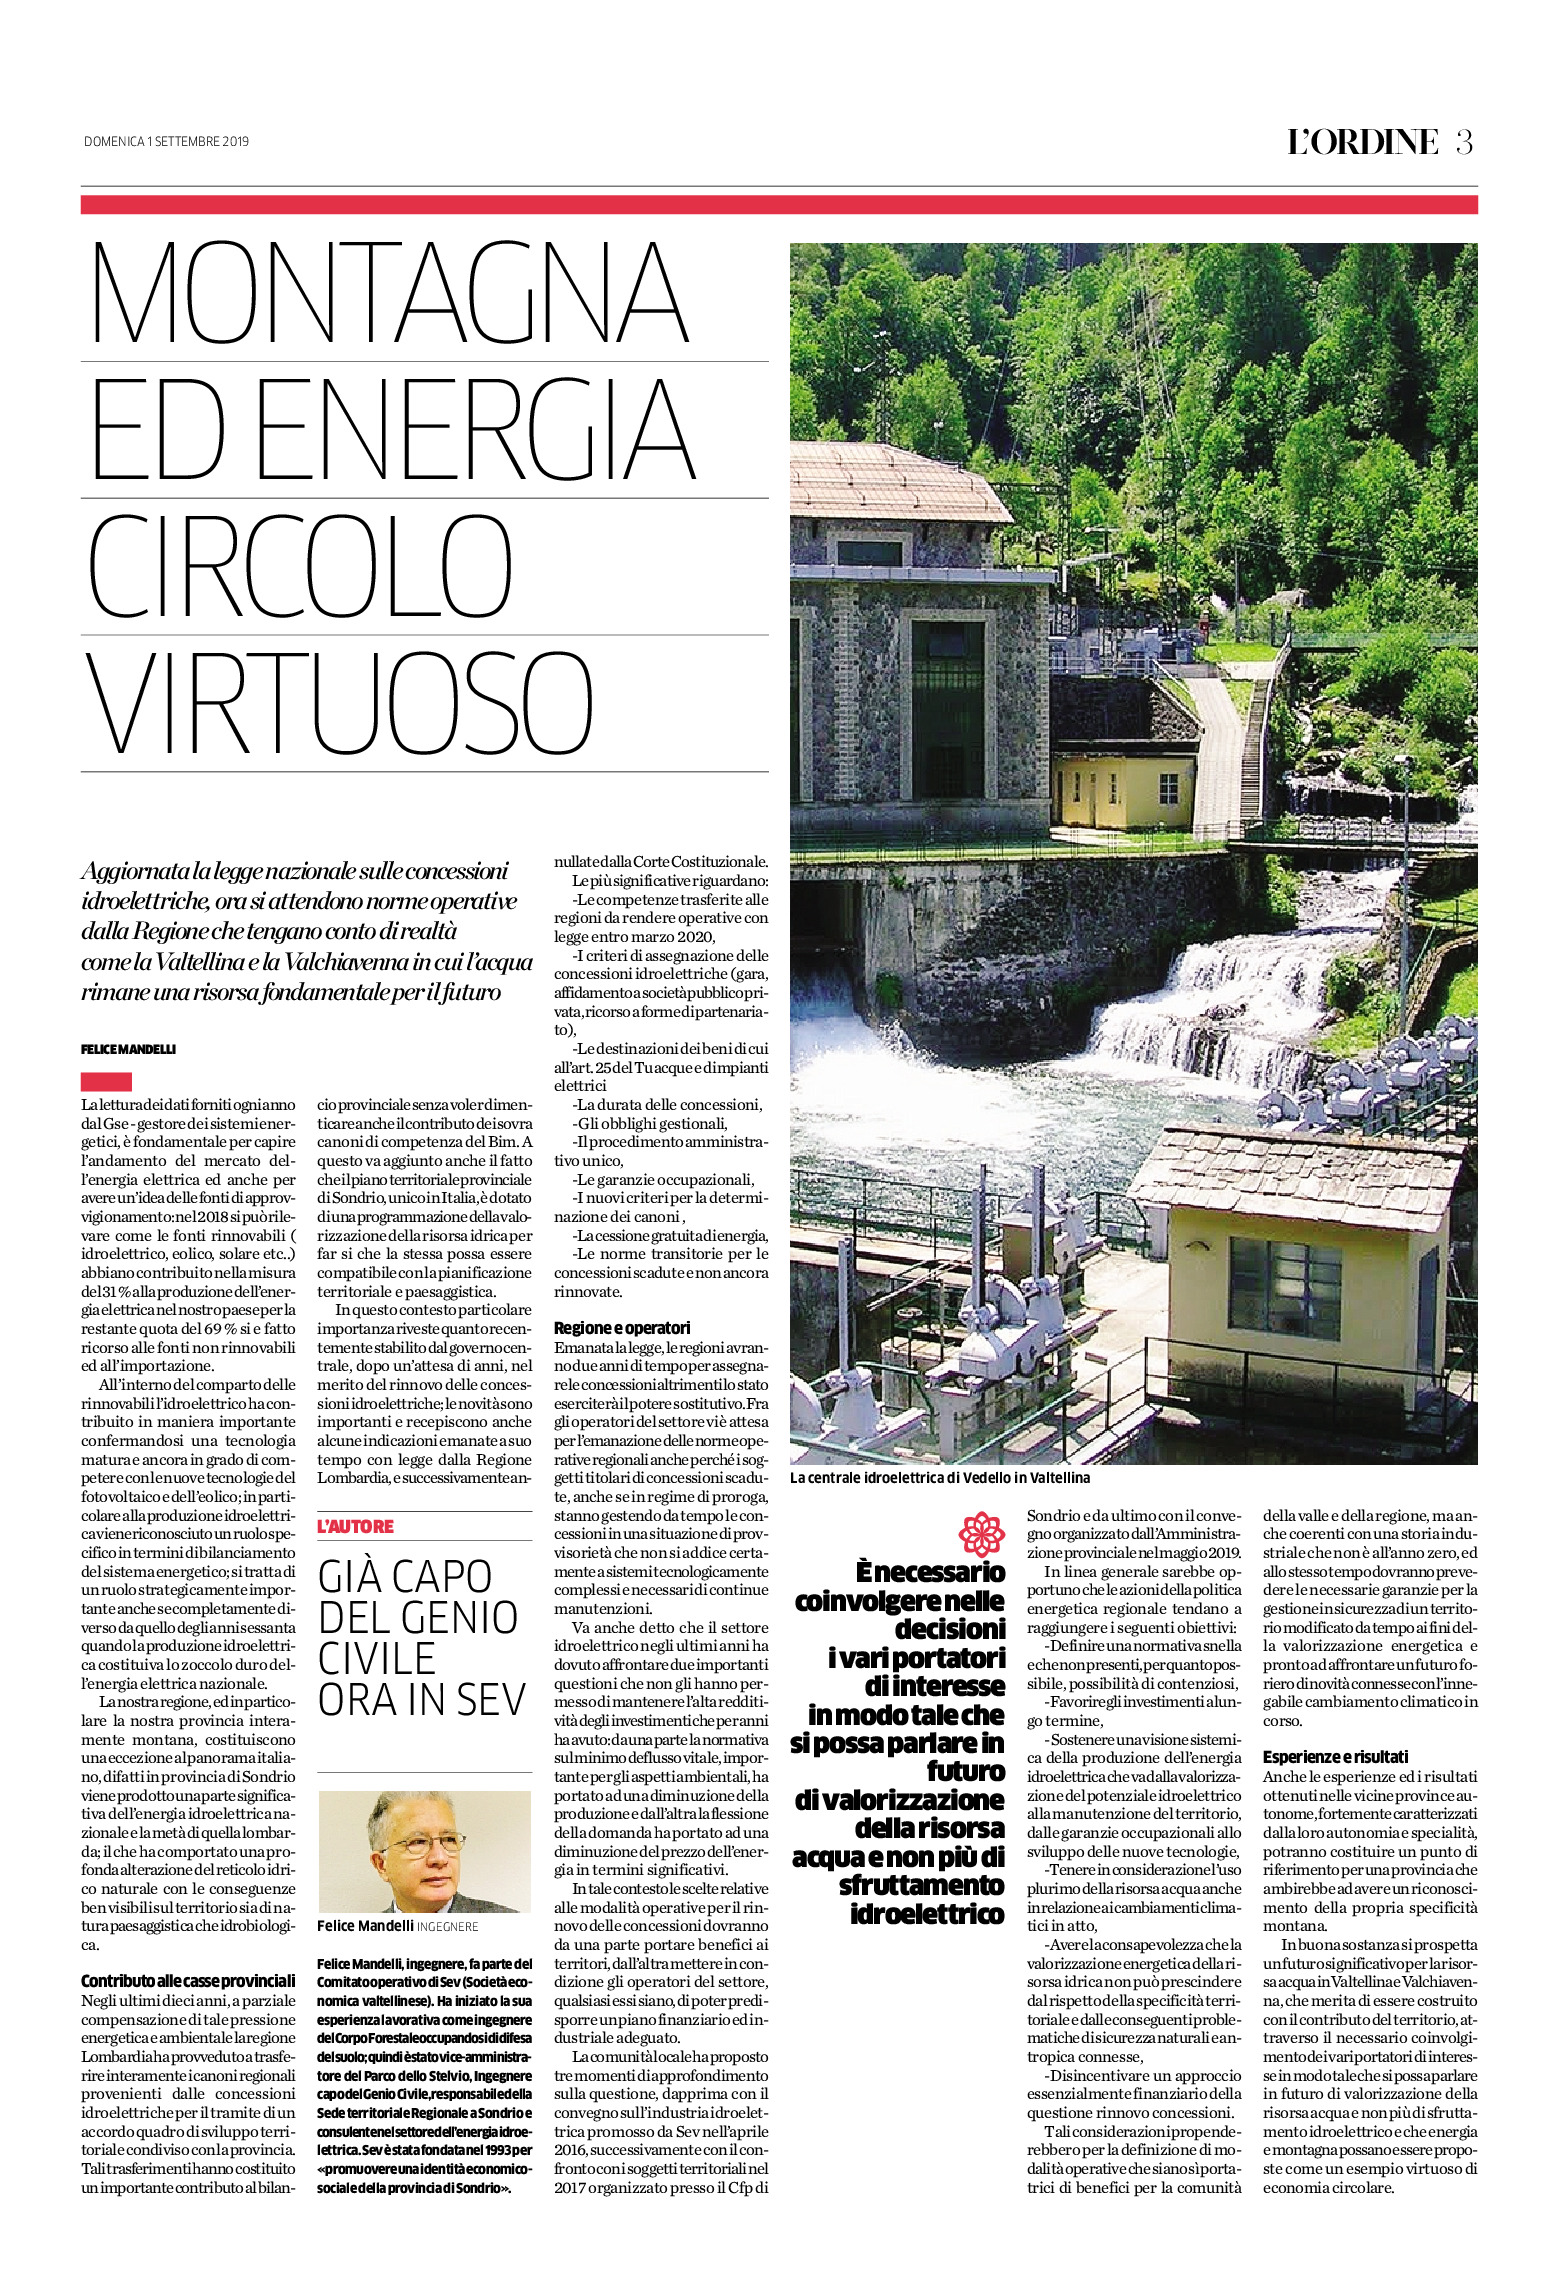 MONTAGNA ED ENERGIA: CIRCOLO VIRTUOSO